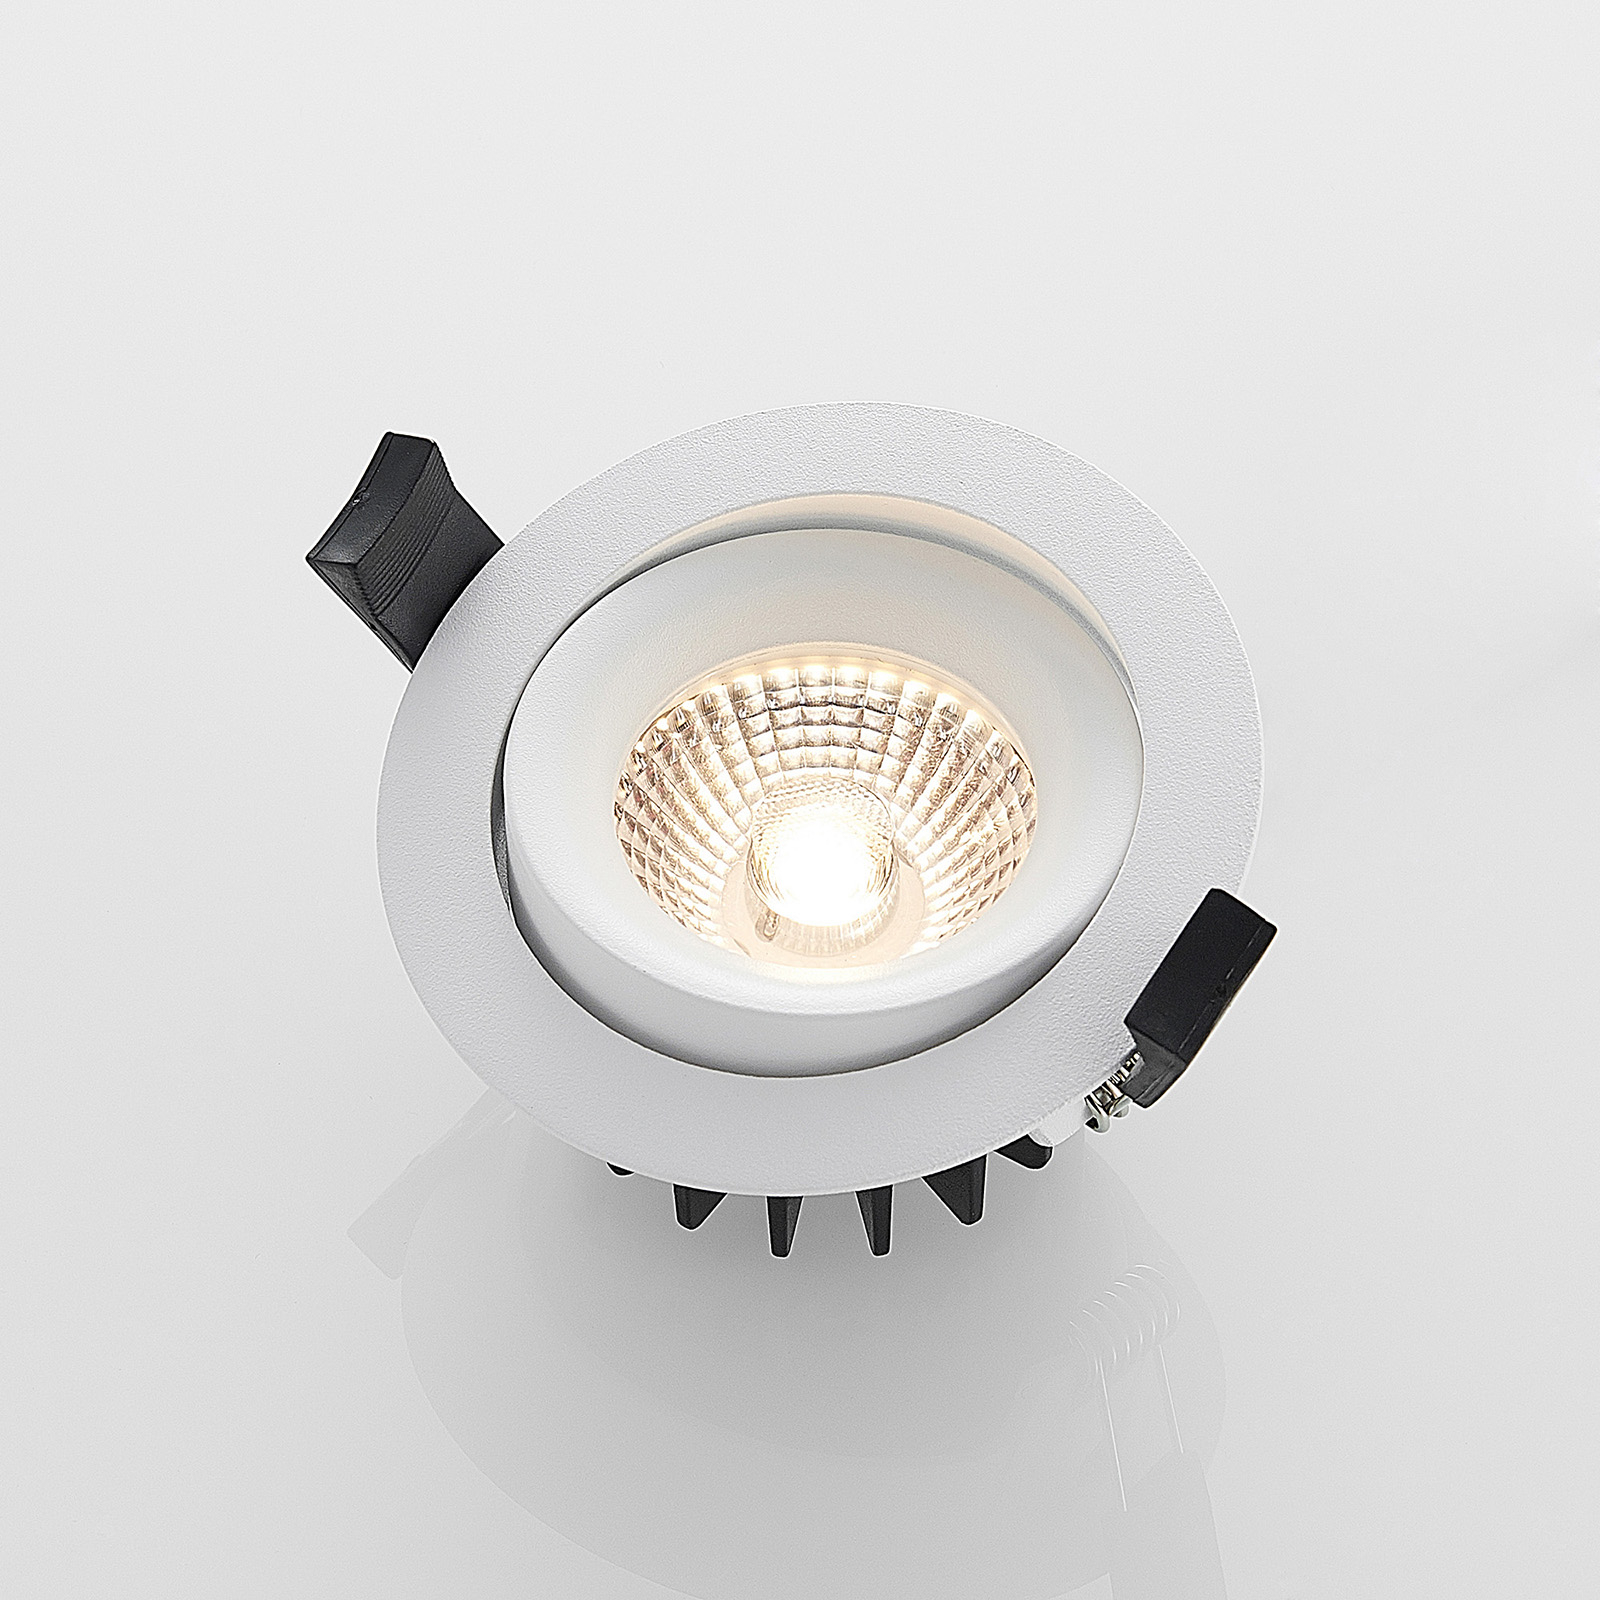 Arcchio Ozias LED inbouwspot wit, 6W